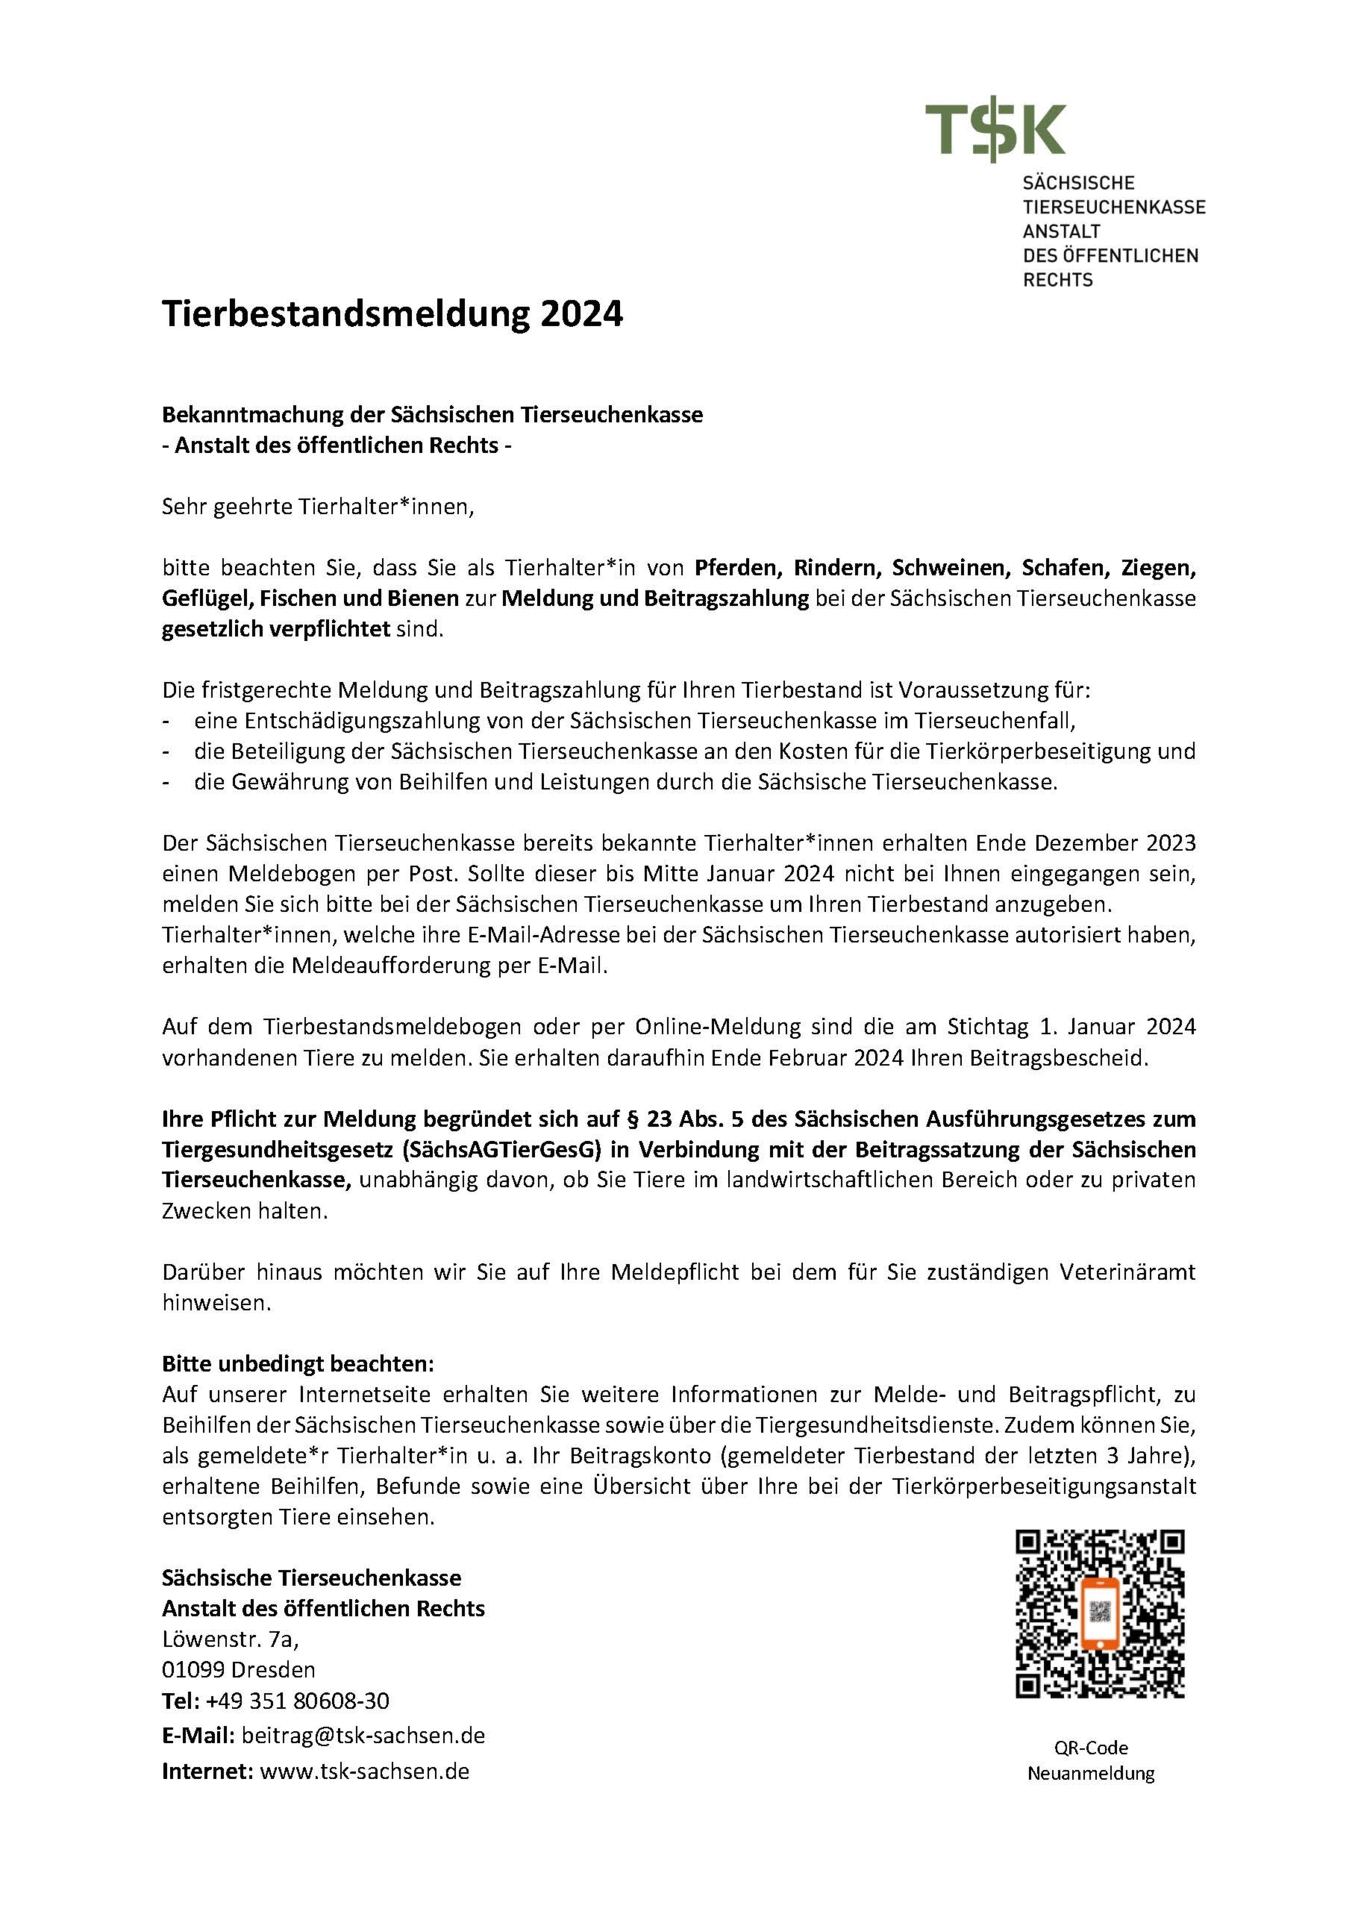 Bekanntmachung der Sächsischen Tierseuchenkasse_Gemeinden 2024